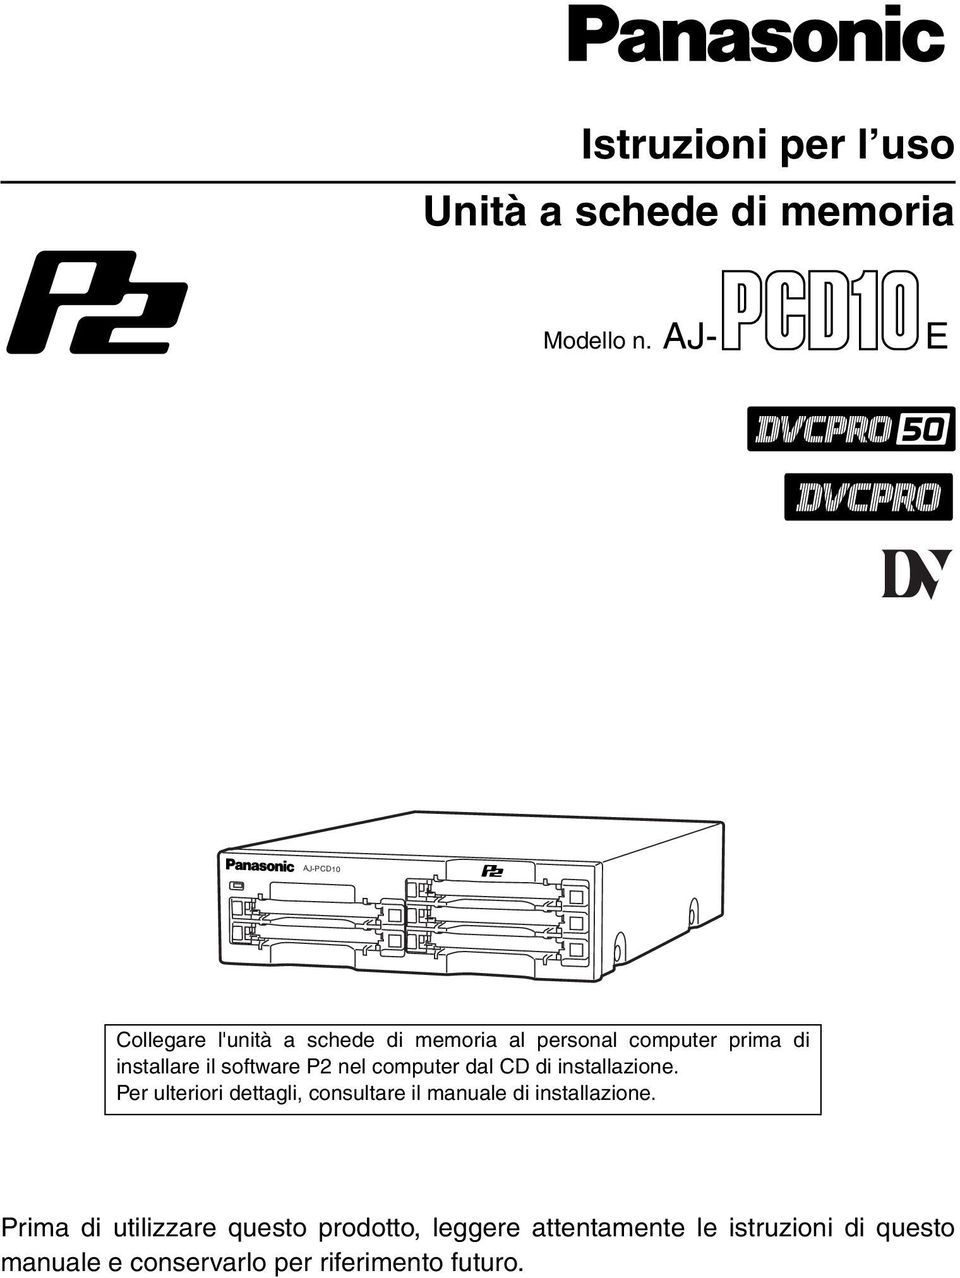 software P2 nel computer dal CD di installazione.